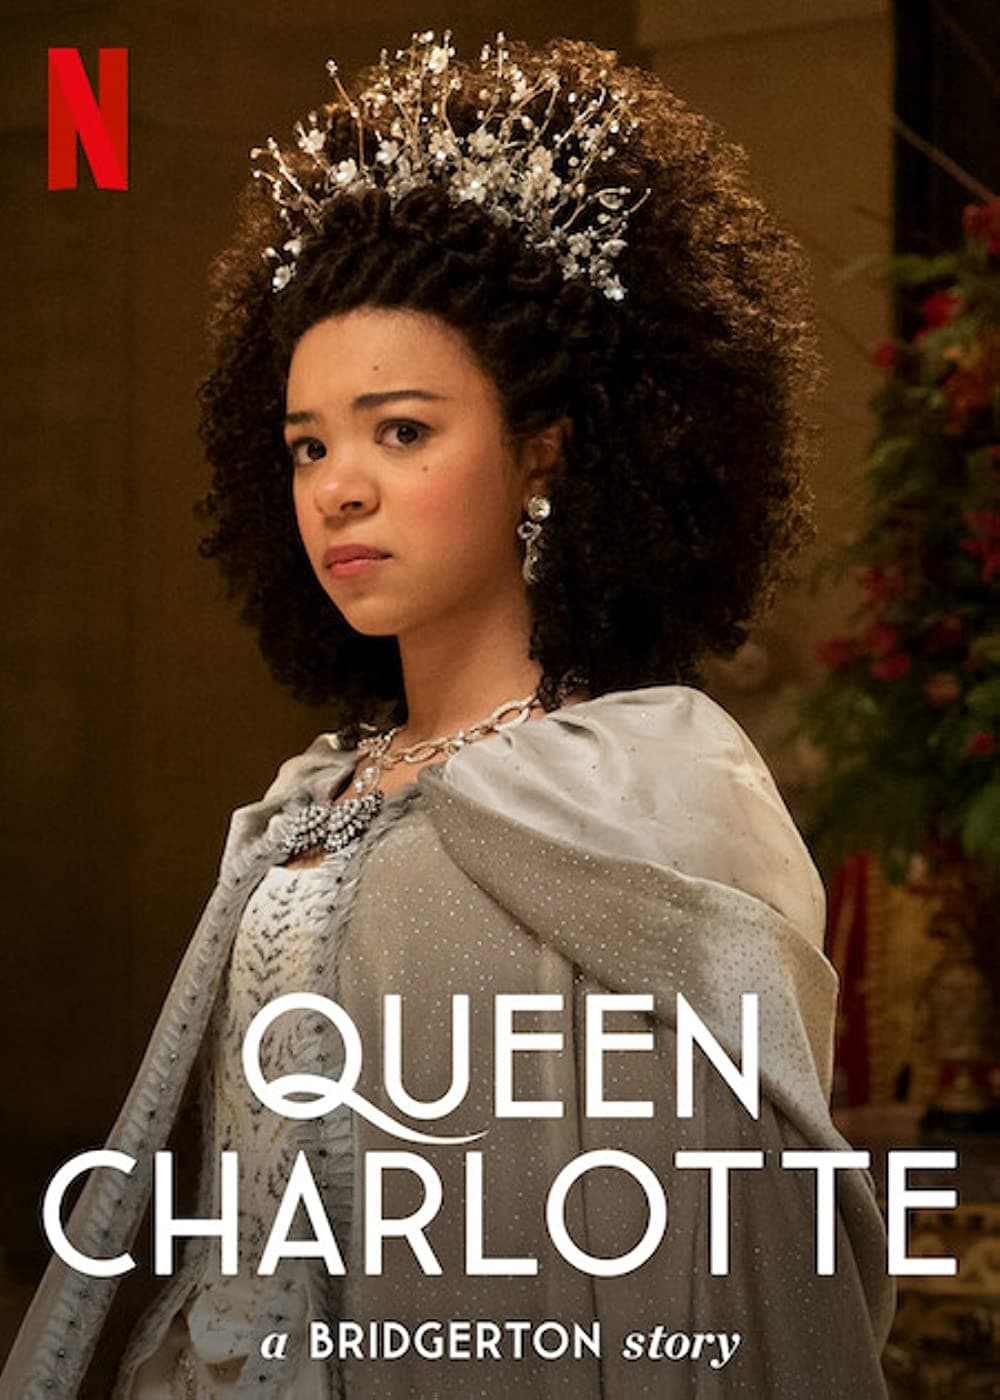 La Reine Charlotte : Un chapitre Bridgerton